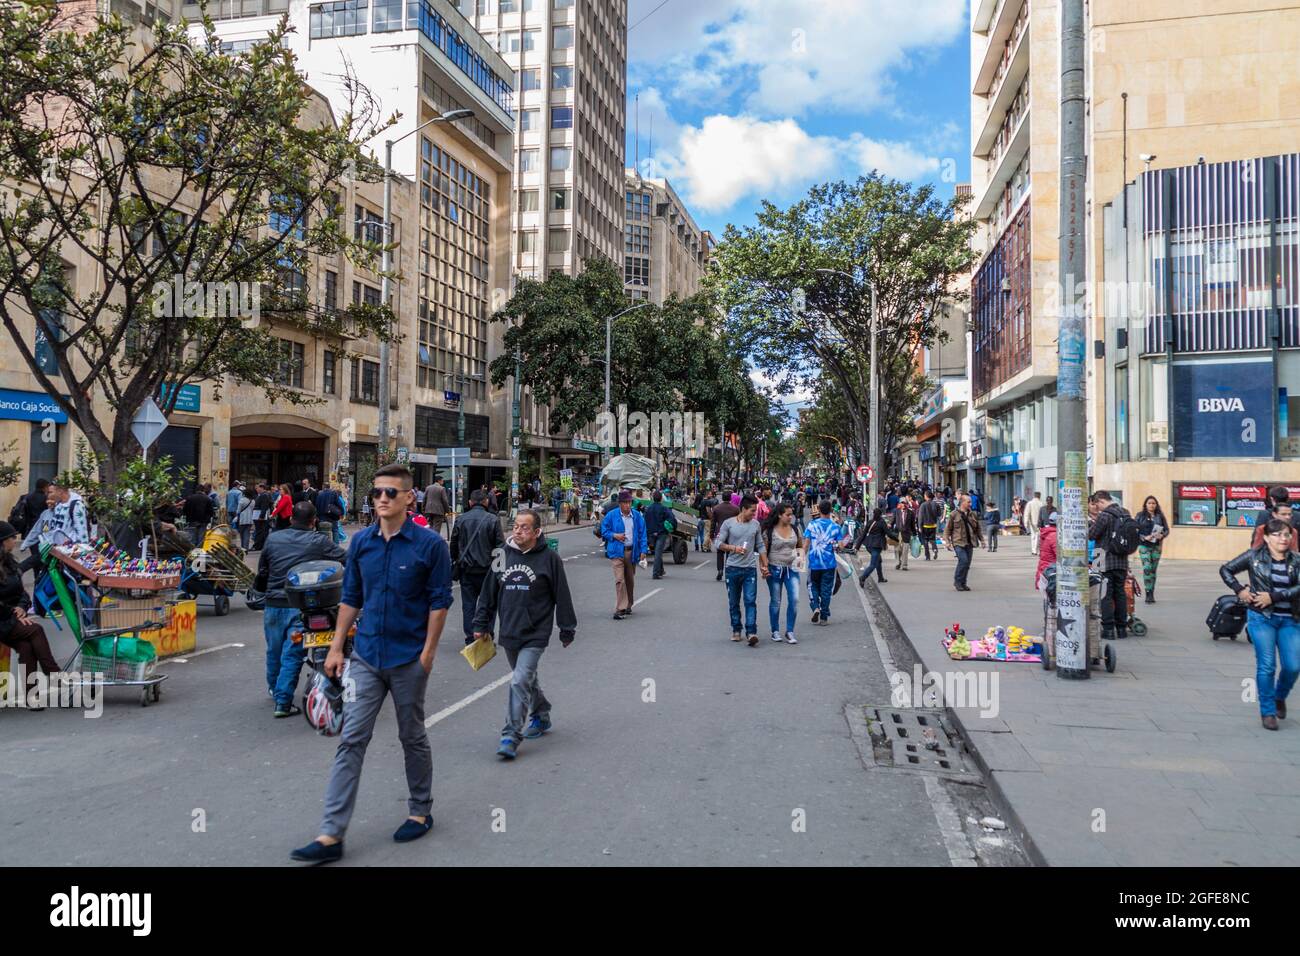 BOGOTA, COLOMBIA - 24 SETTEMBRE 2015: La gente cammina sulla strada Carrera 7 a Bogota, capitale della Colombia. Foto Stock